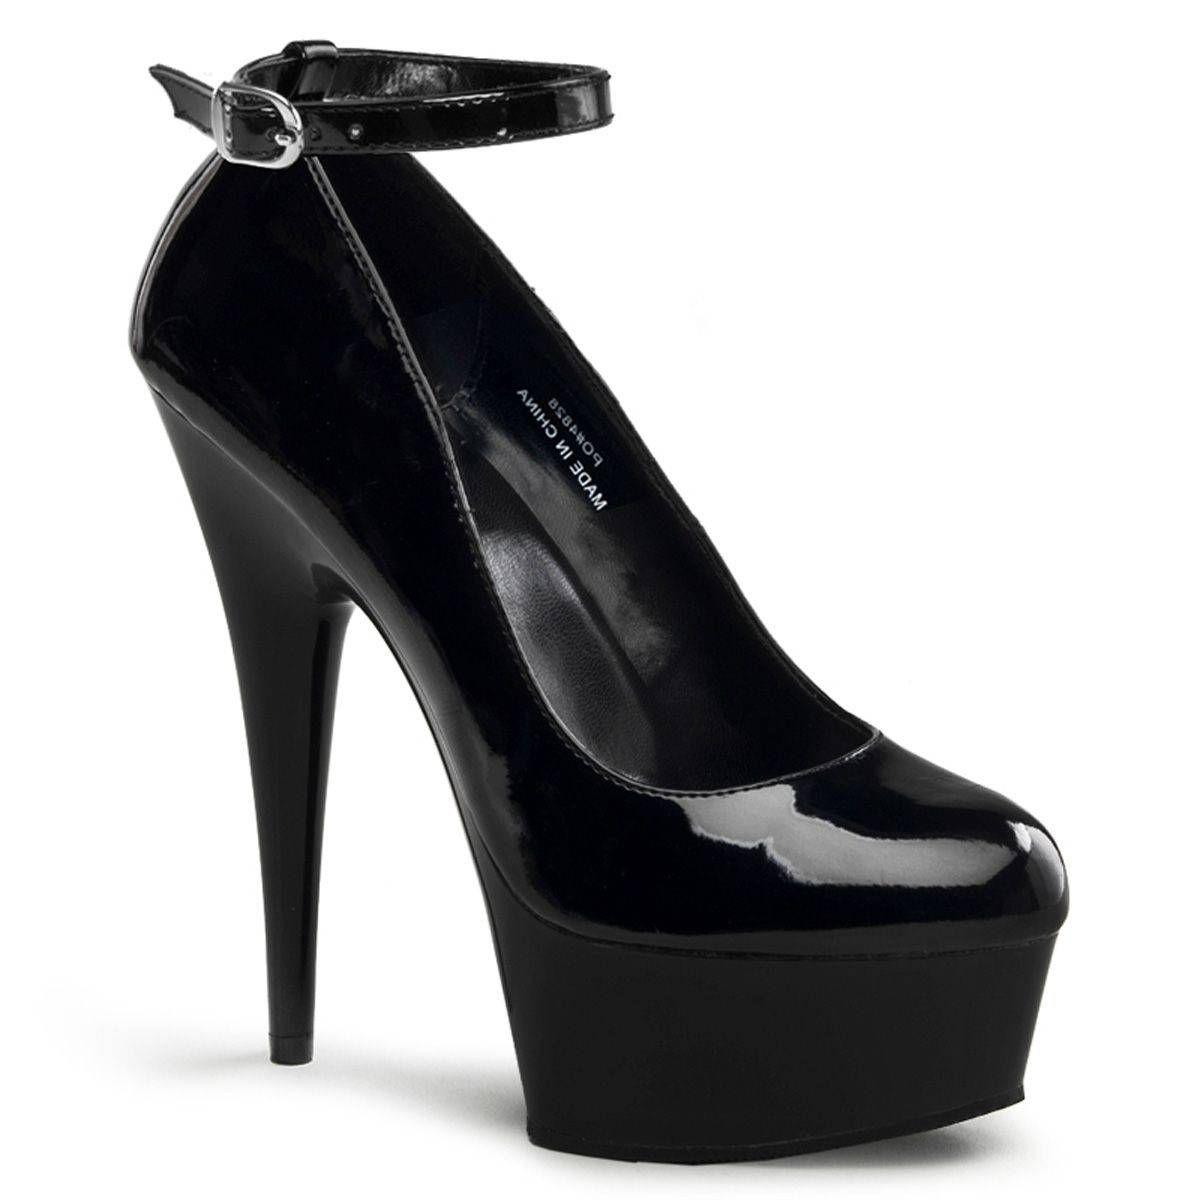 Platform Court Shoe with stiletto heels